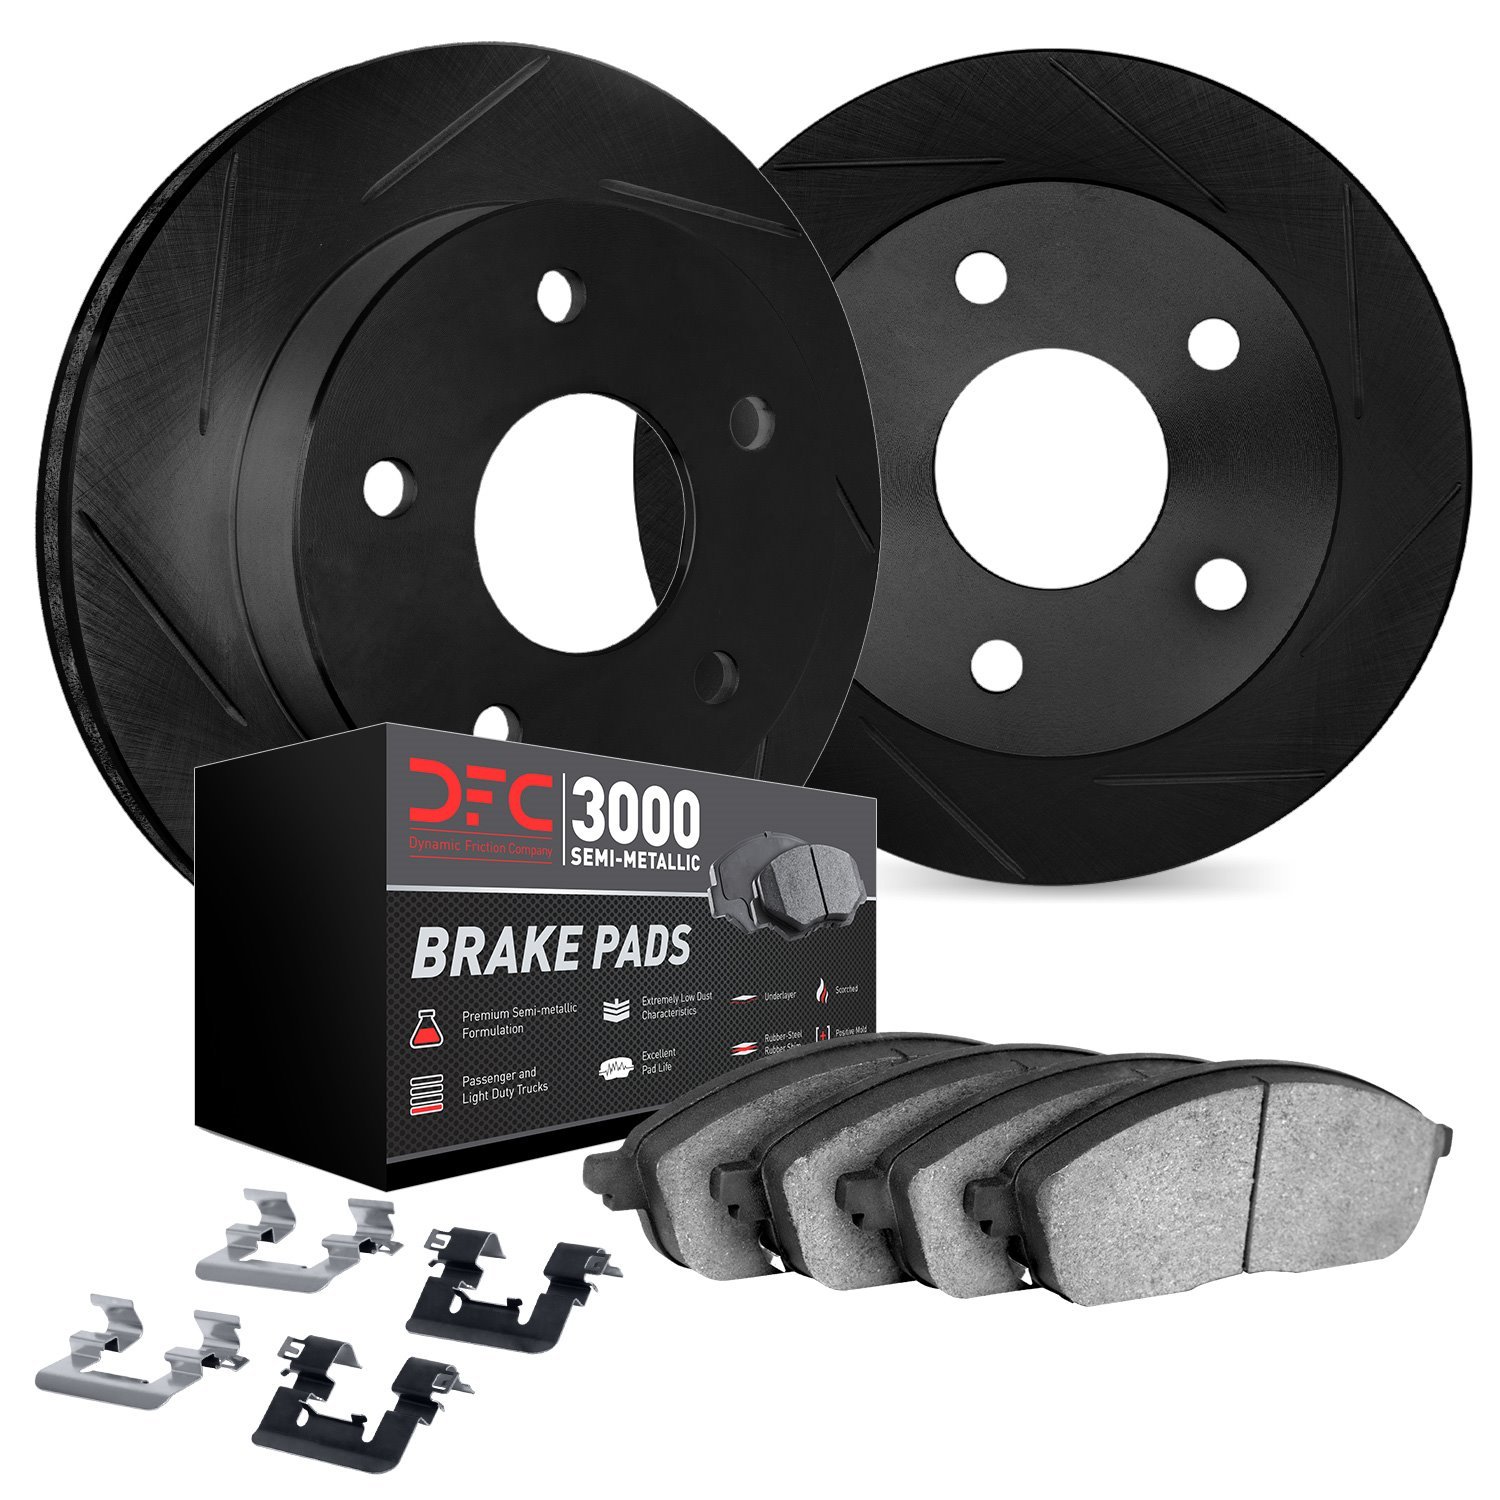 3112-63133 Slotted Brake Rotors with 3000-Series Semi-Metallic Brake Pads Kit & Hardware [Black], 2012-2019 Mercedes-Benz, Posit